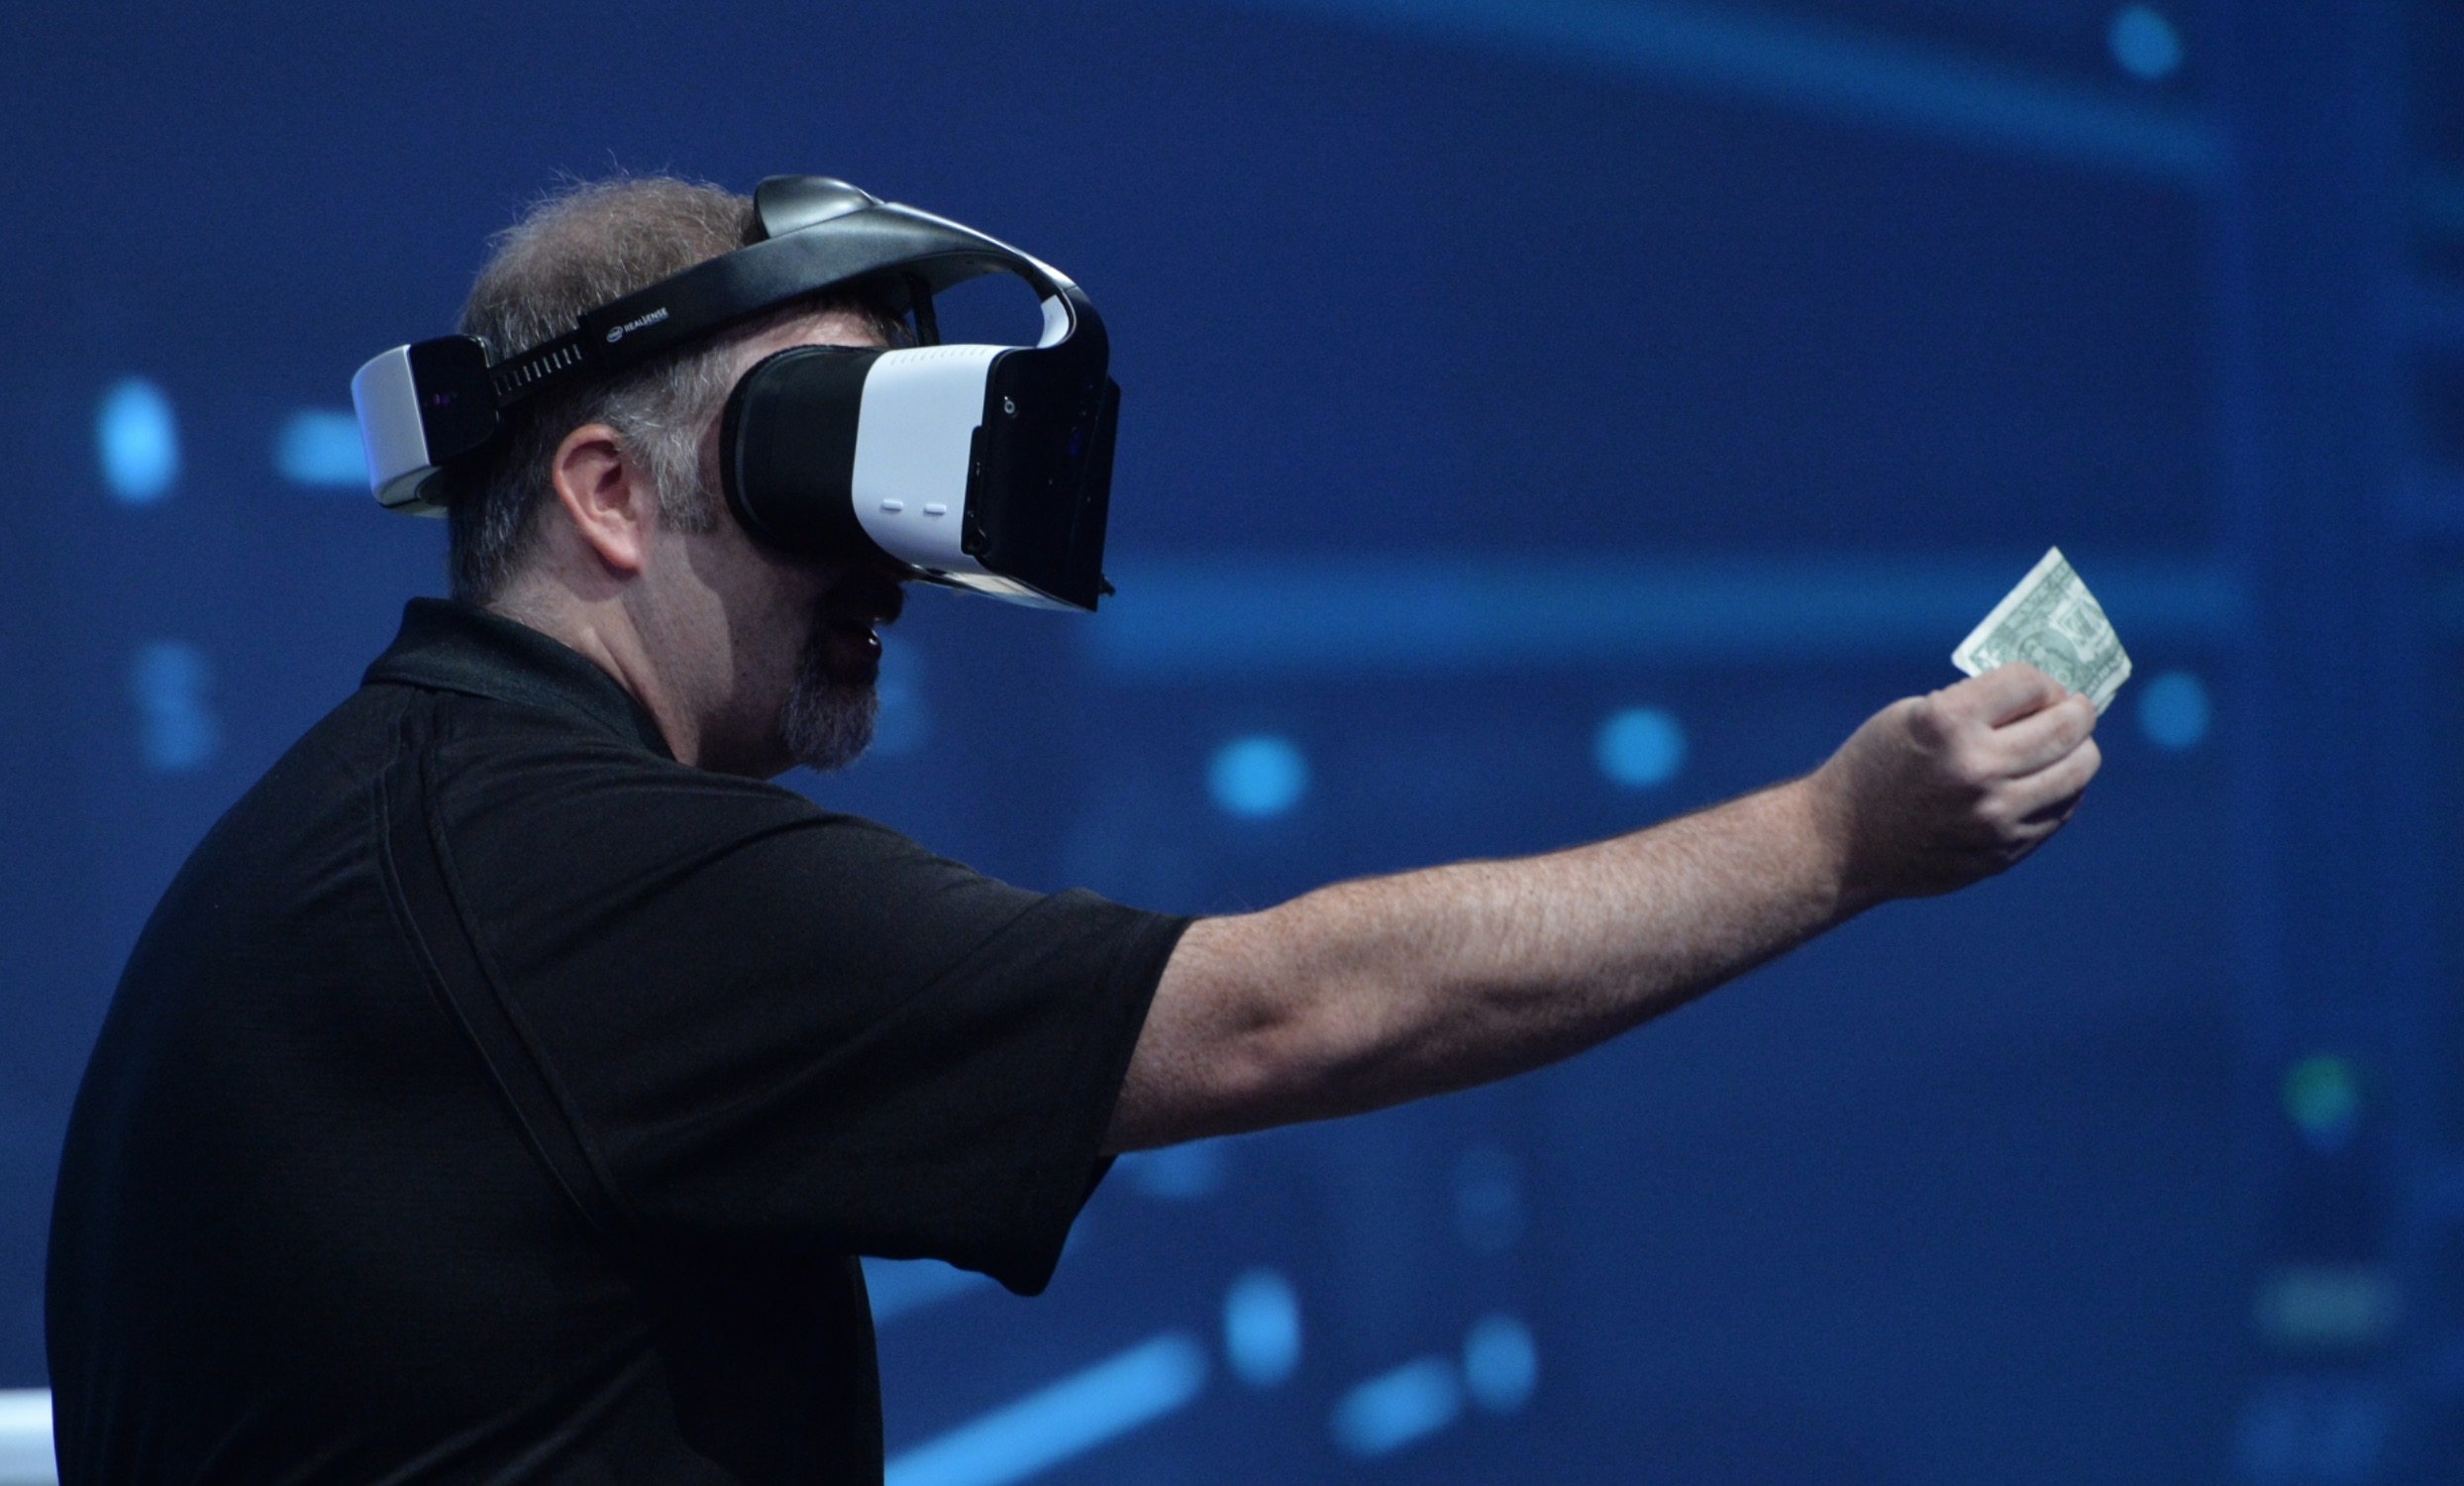 Intel Project Alloy visore realtà virtuale e aumentata